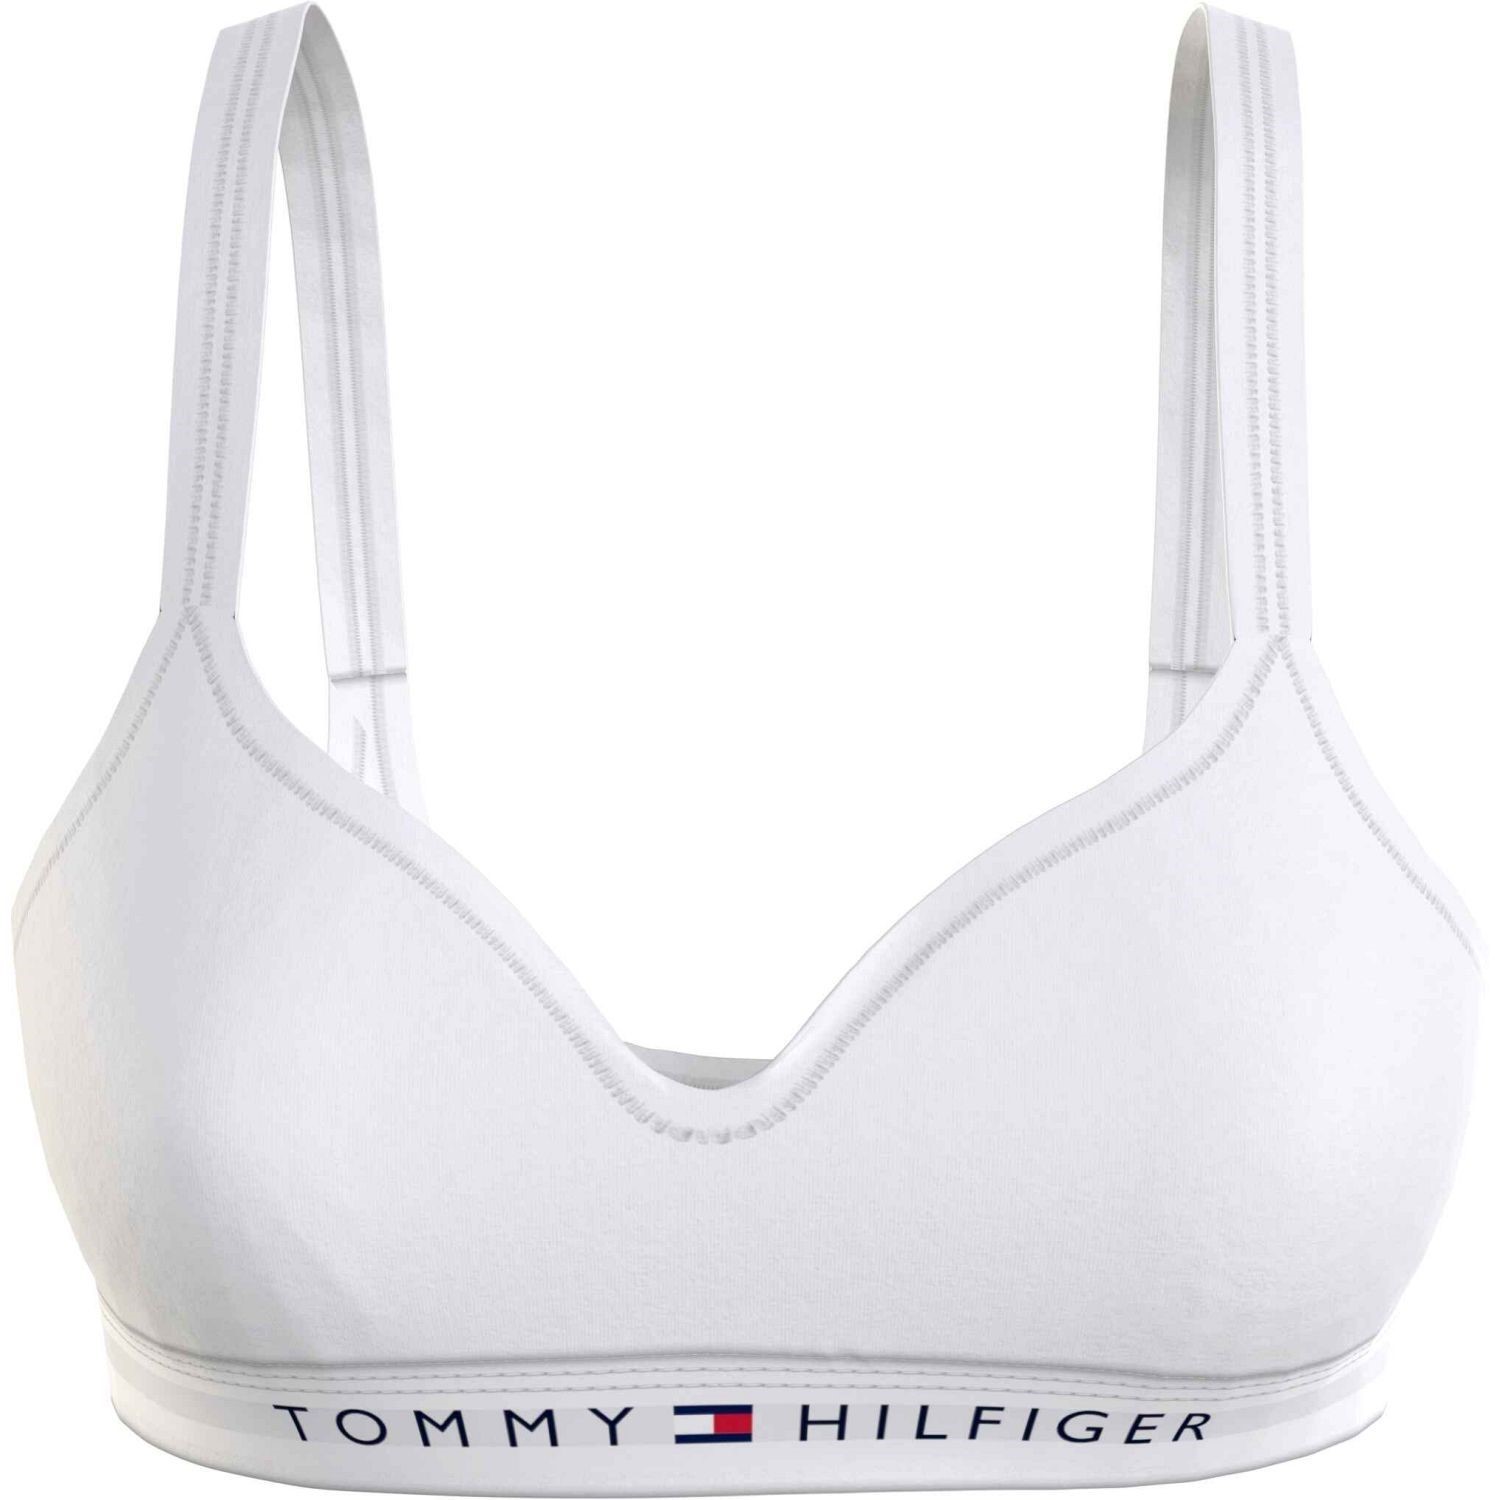 Tommy Hilfiger Original Bralette Lift - T-shirt - Bras - Underwear -  Timarco.co.uk